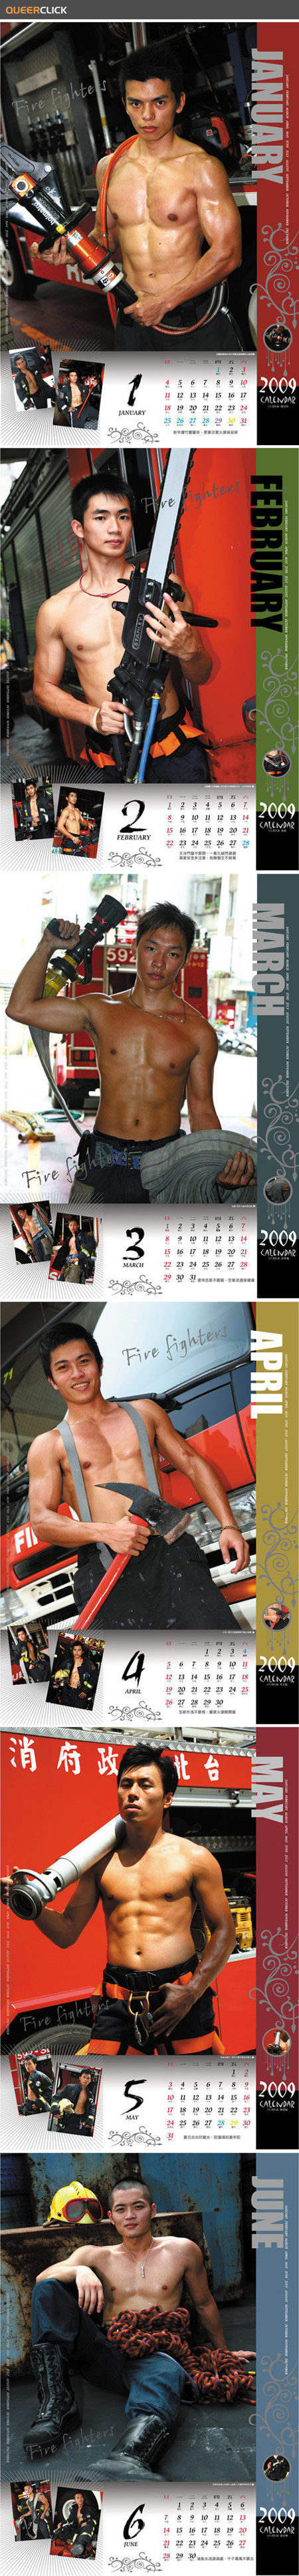 2009 Asian Firefighter Calendar 1